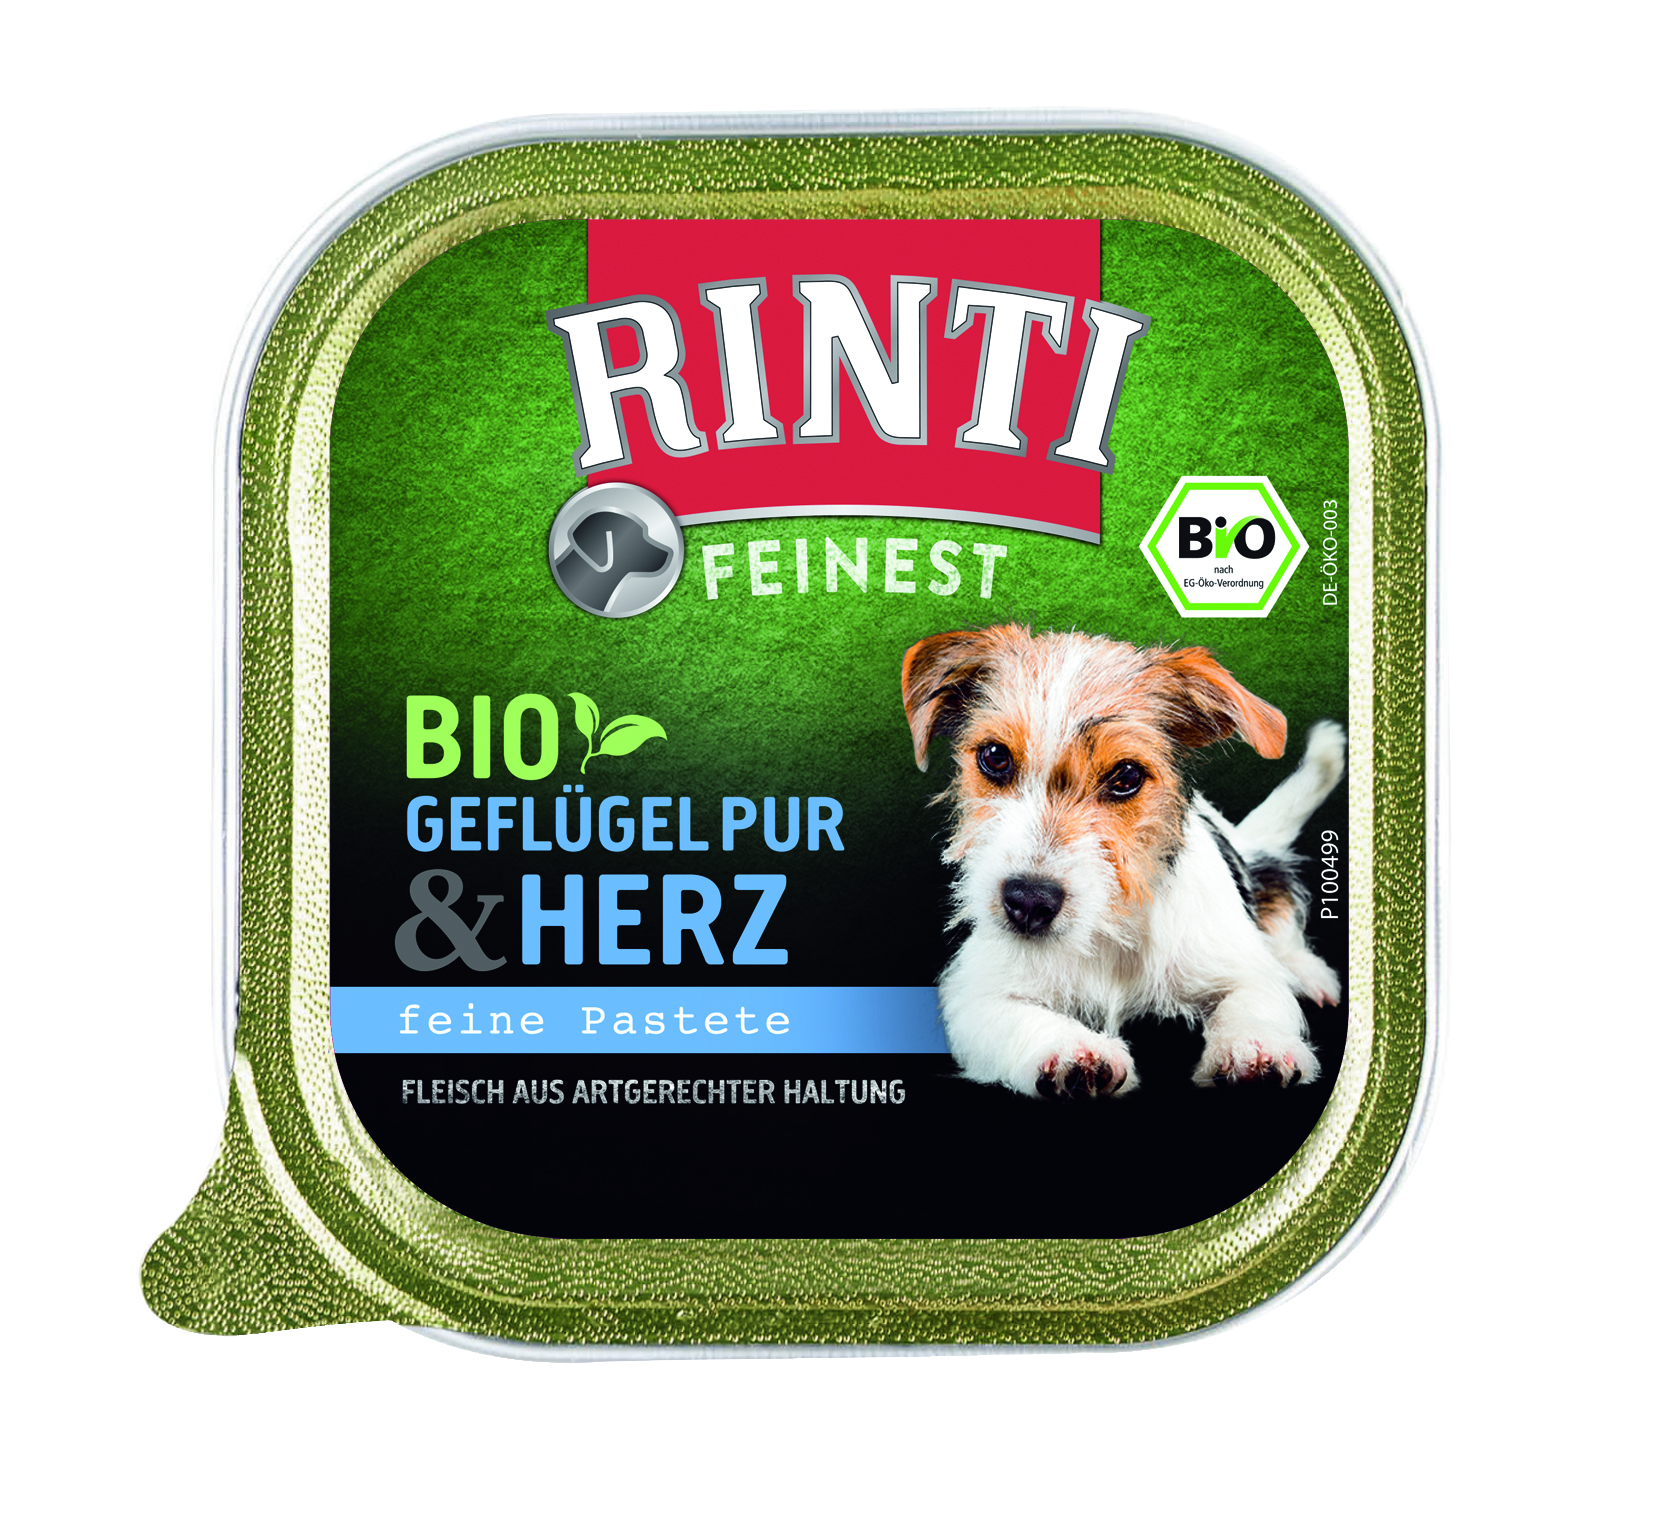 Rinti Feinest Bio Geflügel Pur & Herz 150g